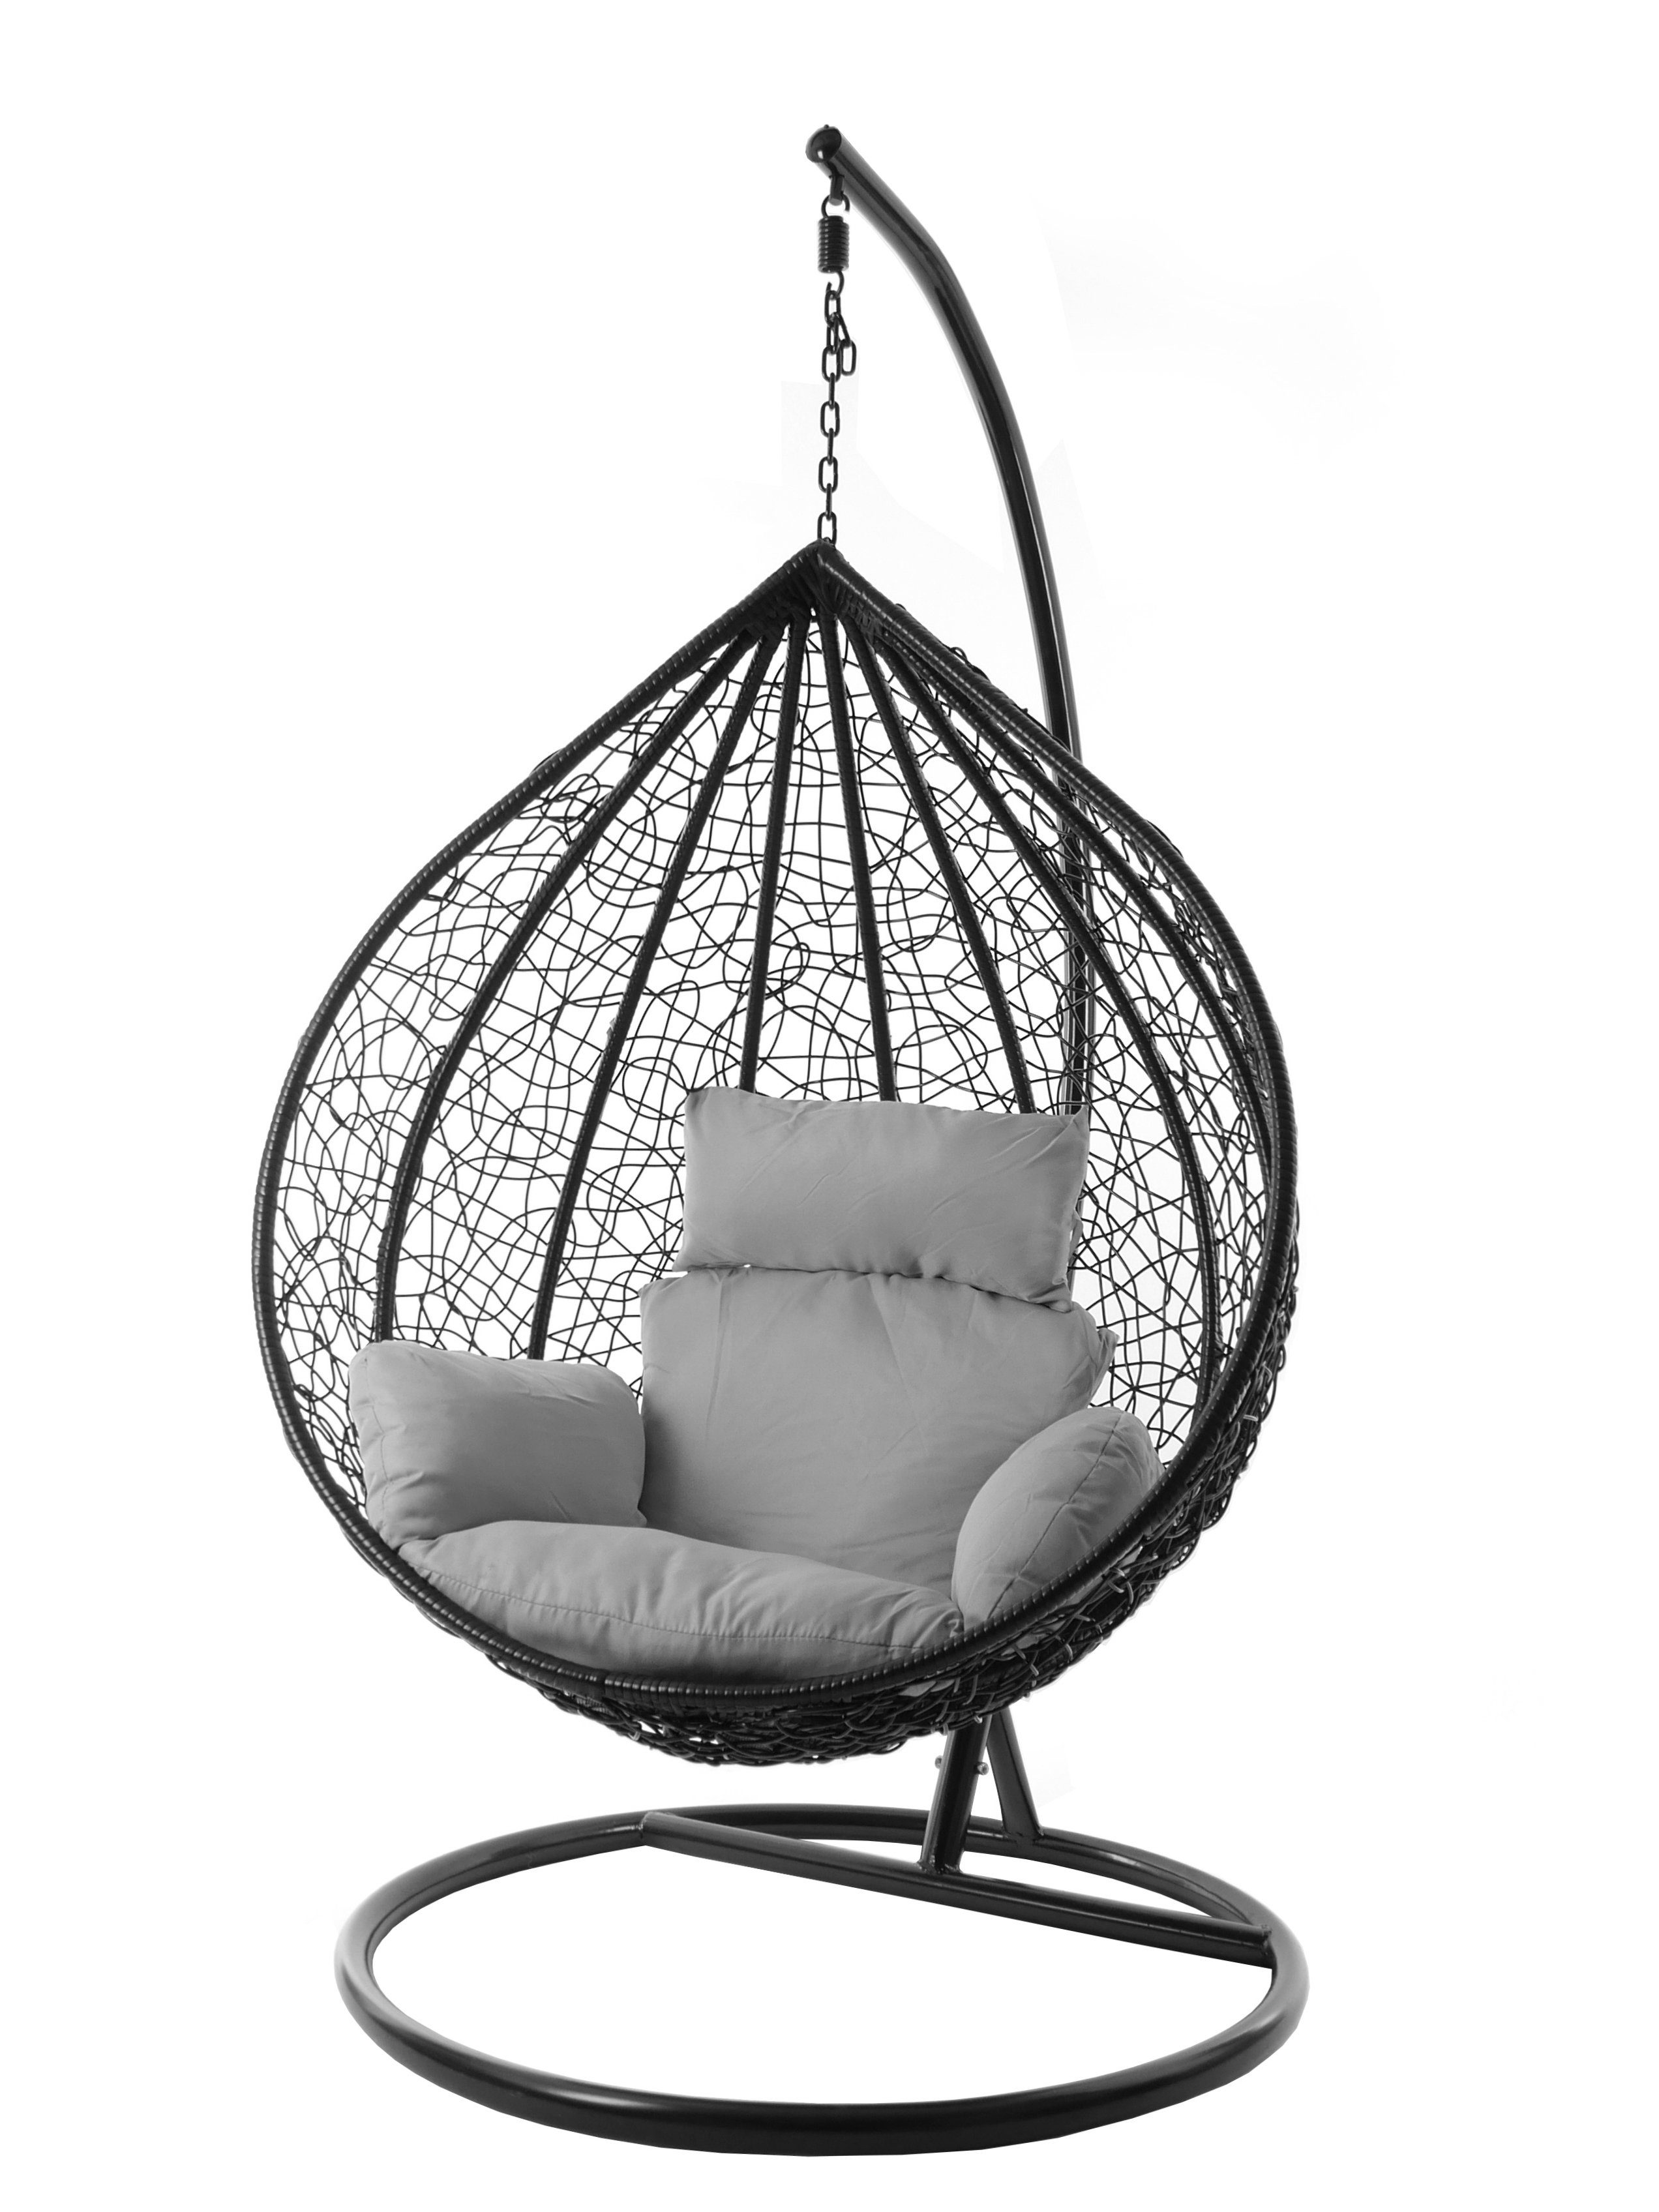 KIDEO Hängesessel Hängesessel MANACOR schwarz, XXL Swing Chair, edel, Gestell und Kissen inklusive, Nest-Kissen, verschiedene Farben grau (8008 cloud)